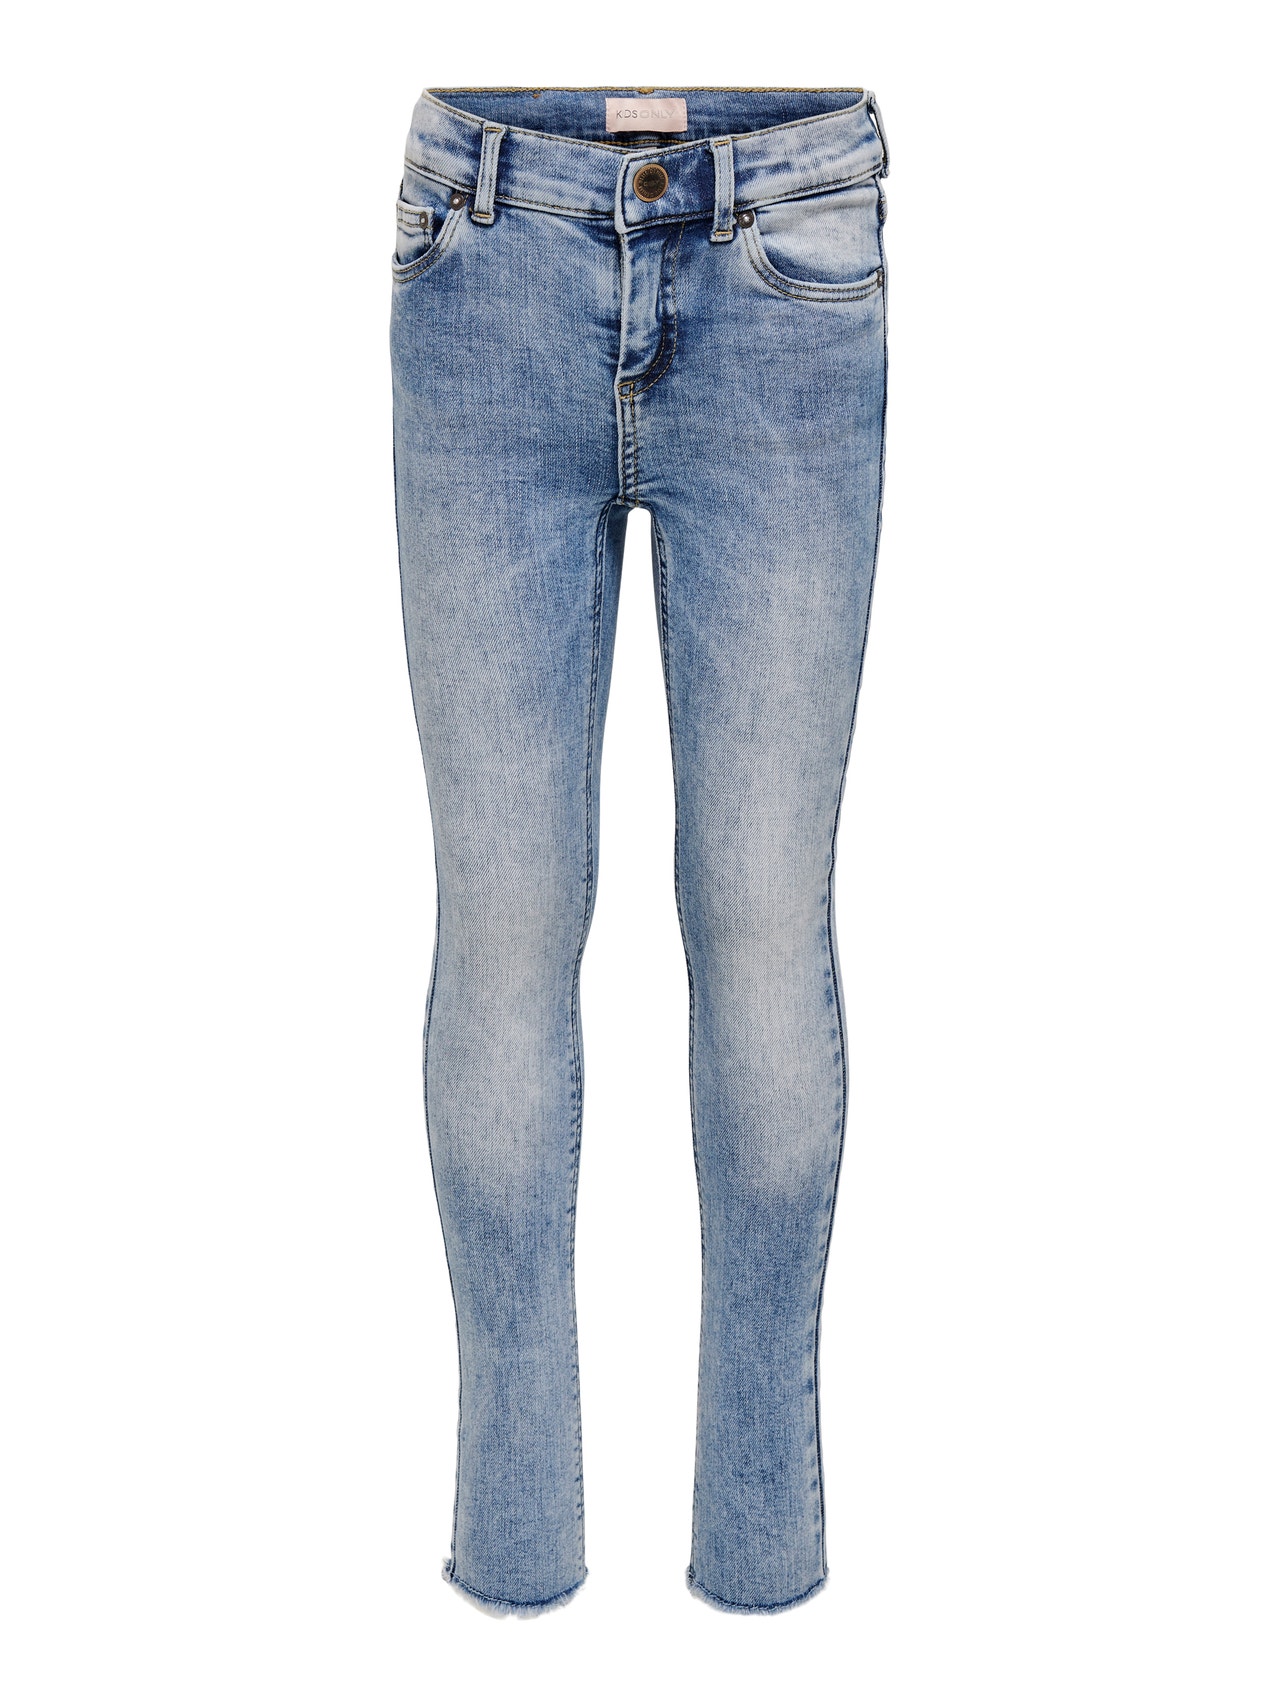 ONLY Skinny Fit Jeans -Light Blue Denim - 15222975